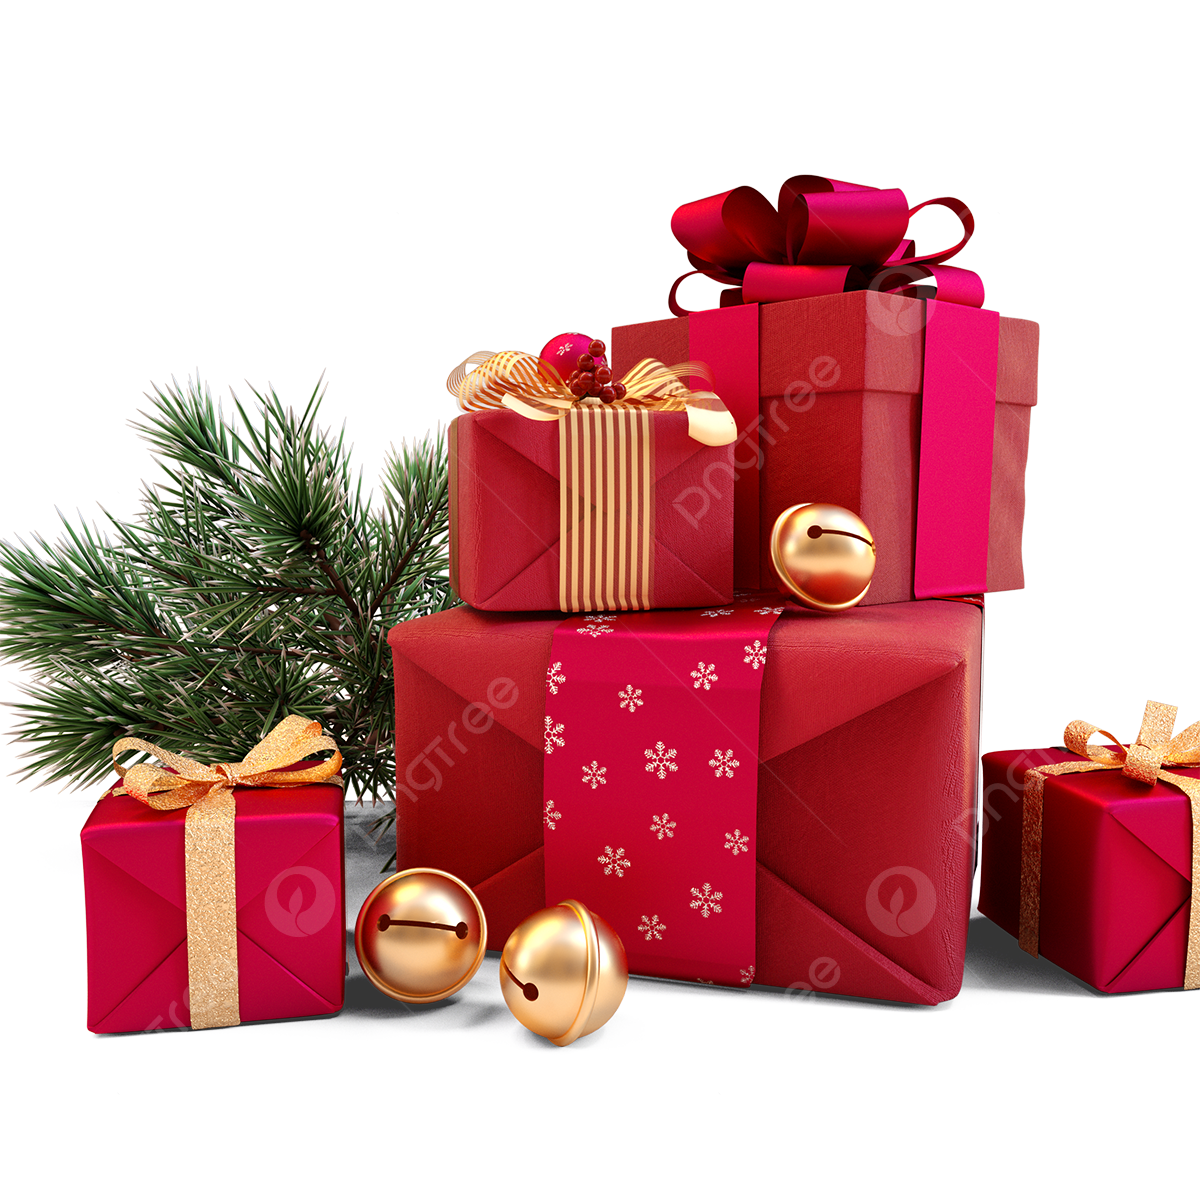 Christmas Present PNG Image File